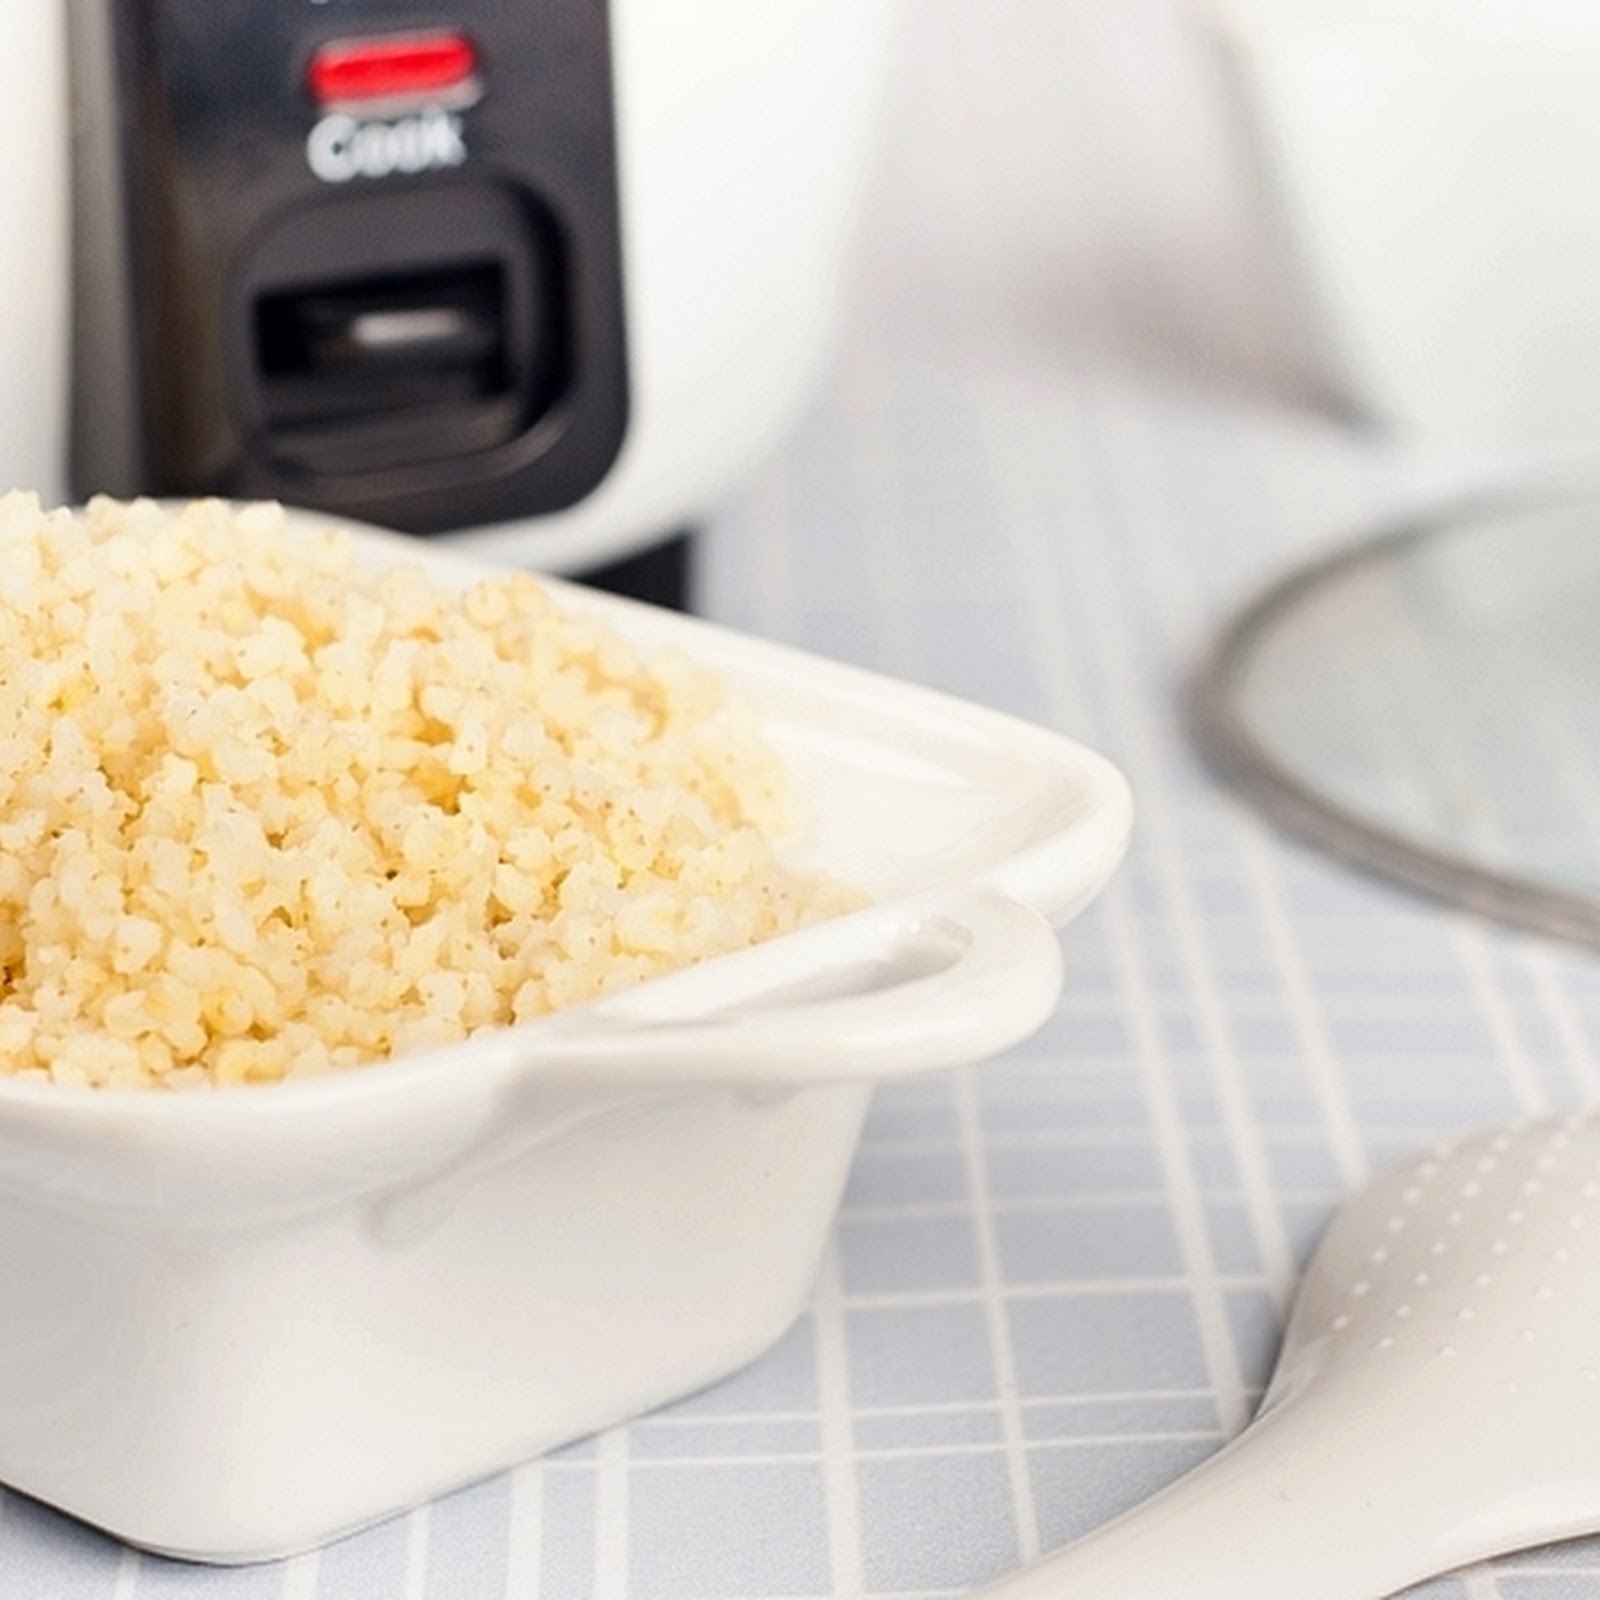 Garnek do gotowania ryżu czyli rice cooker 